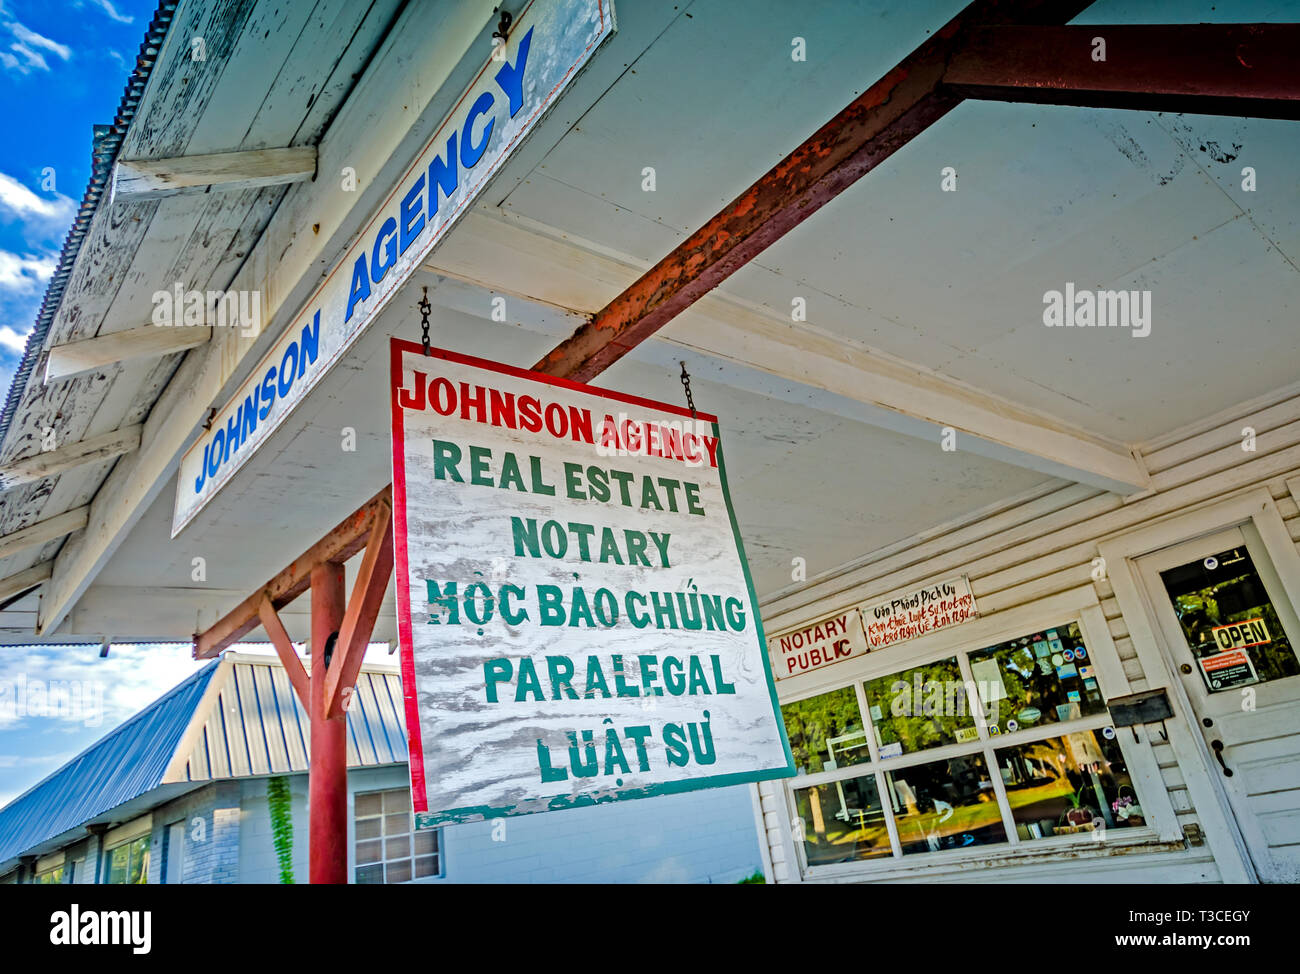 Letreros en inglés y vietnamita publicidad inmobiliaria y notario público servicios ofrecidos por Agencia Johnson, 15 de agosto de 2015, en Bayou La Batre, Alabama. Foto de stock